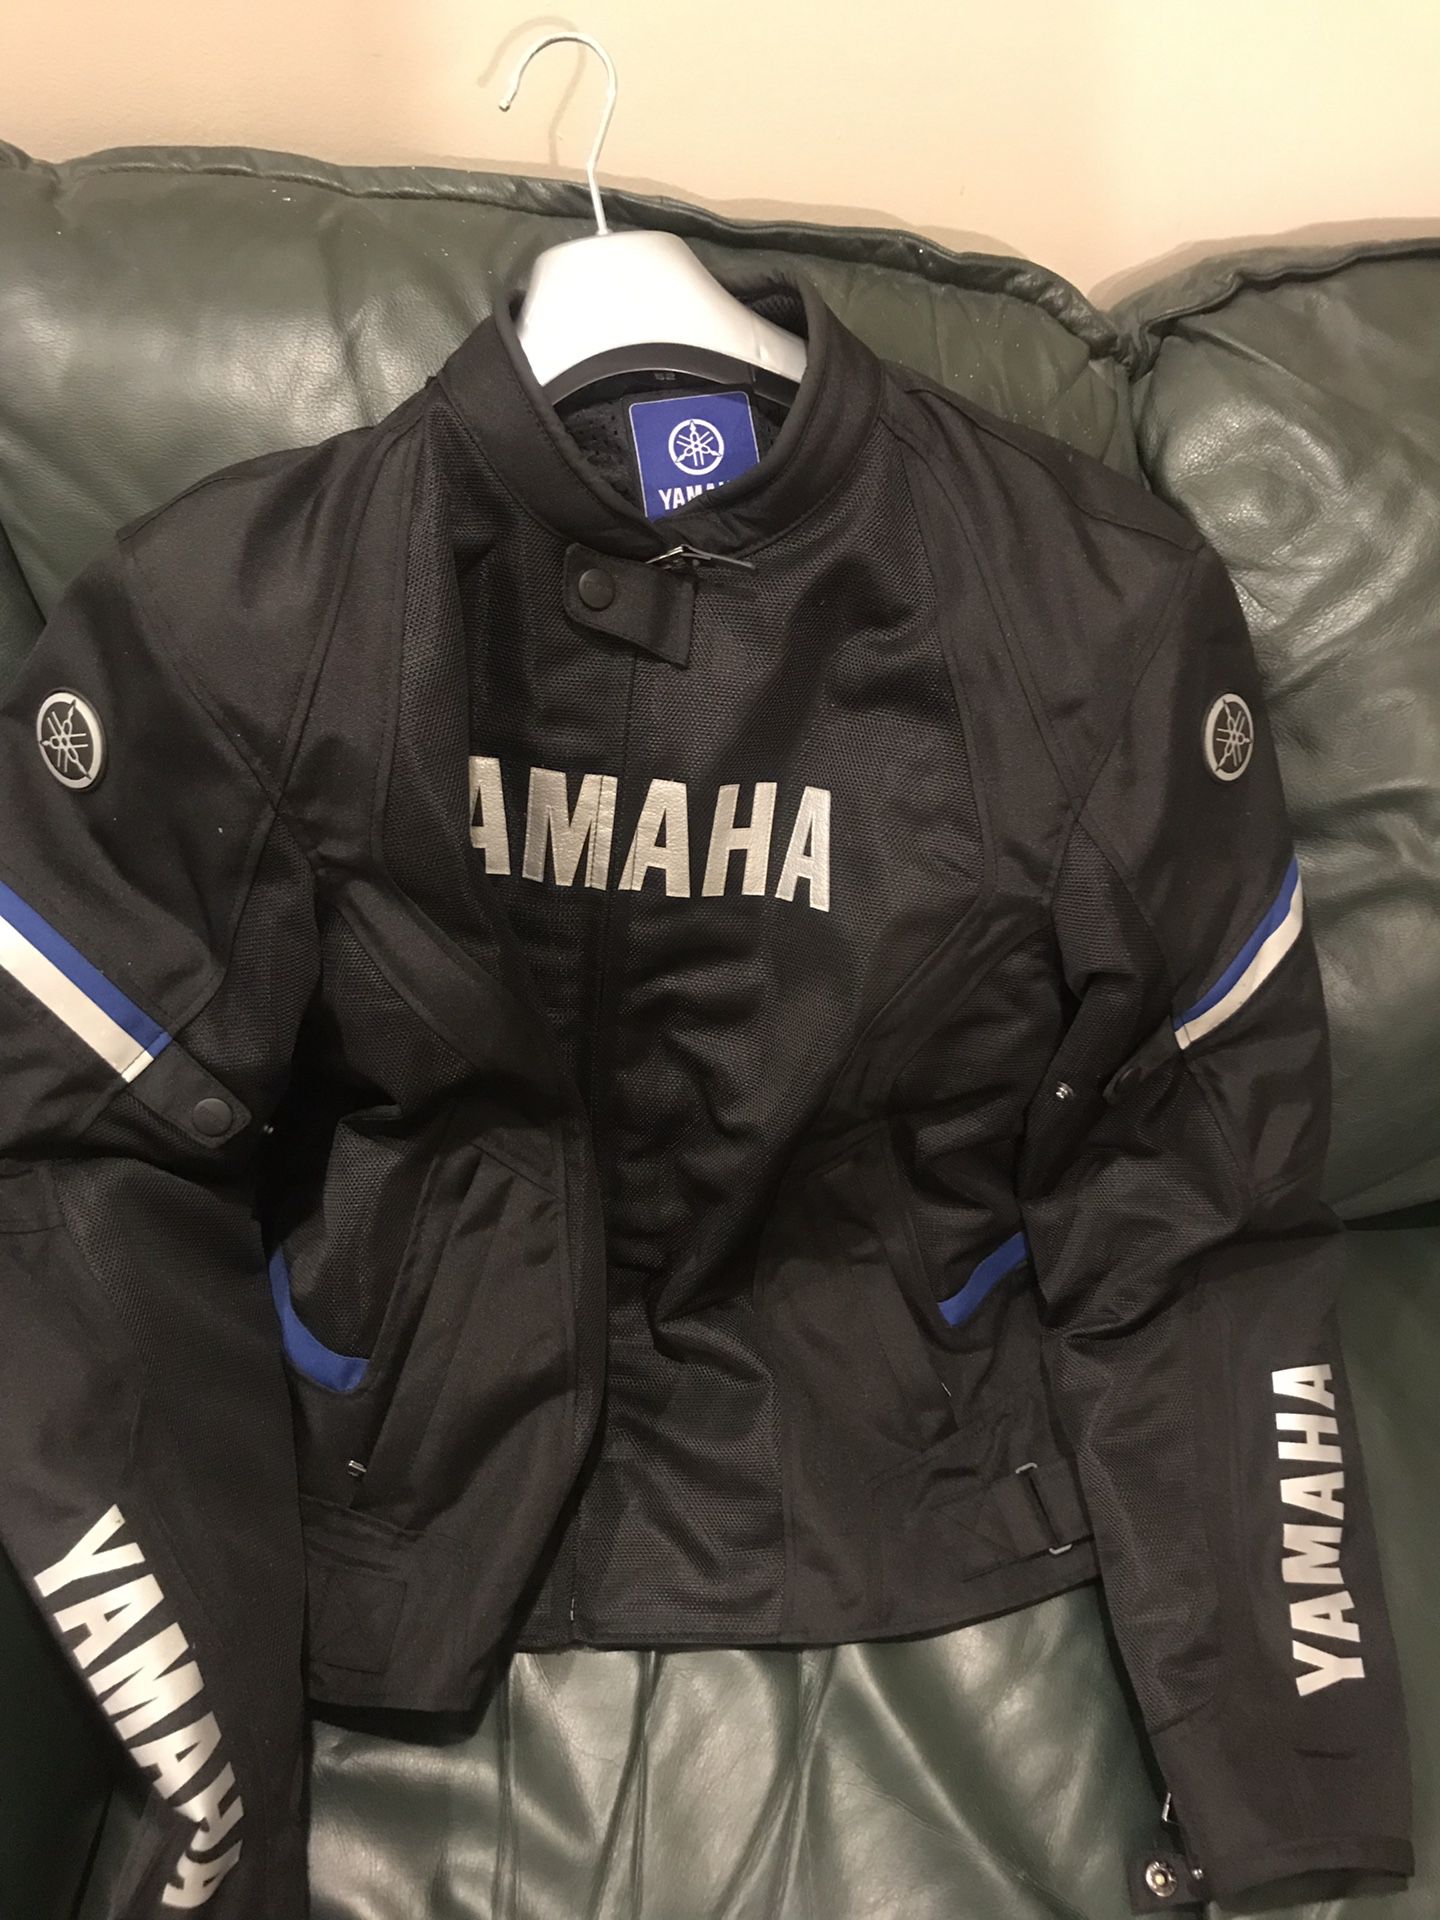 Yamaha jacket motorcycle jacket